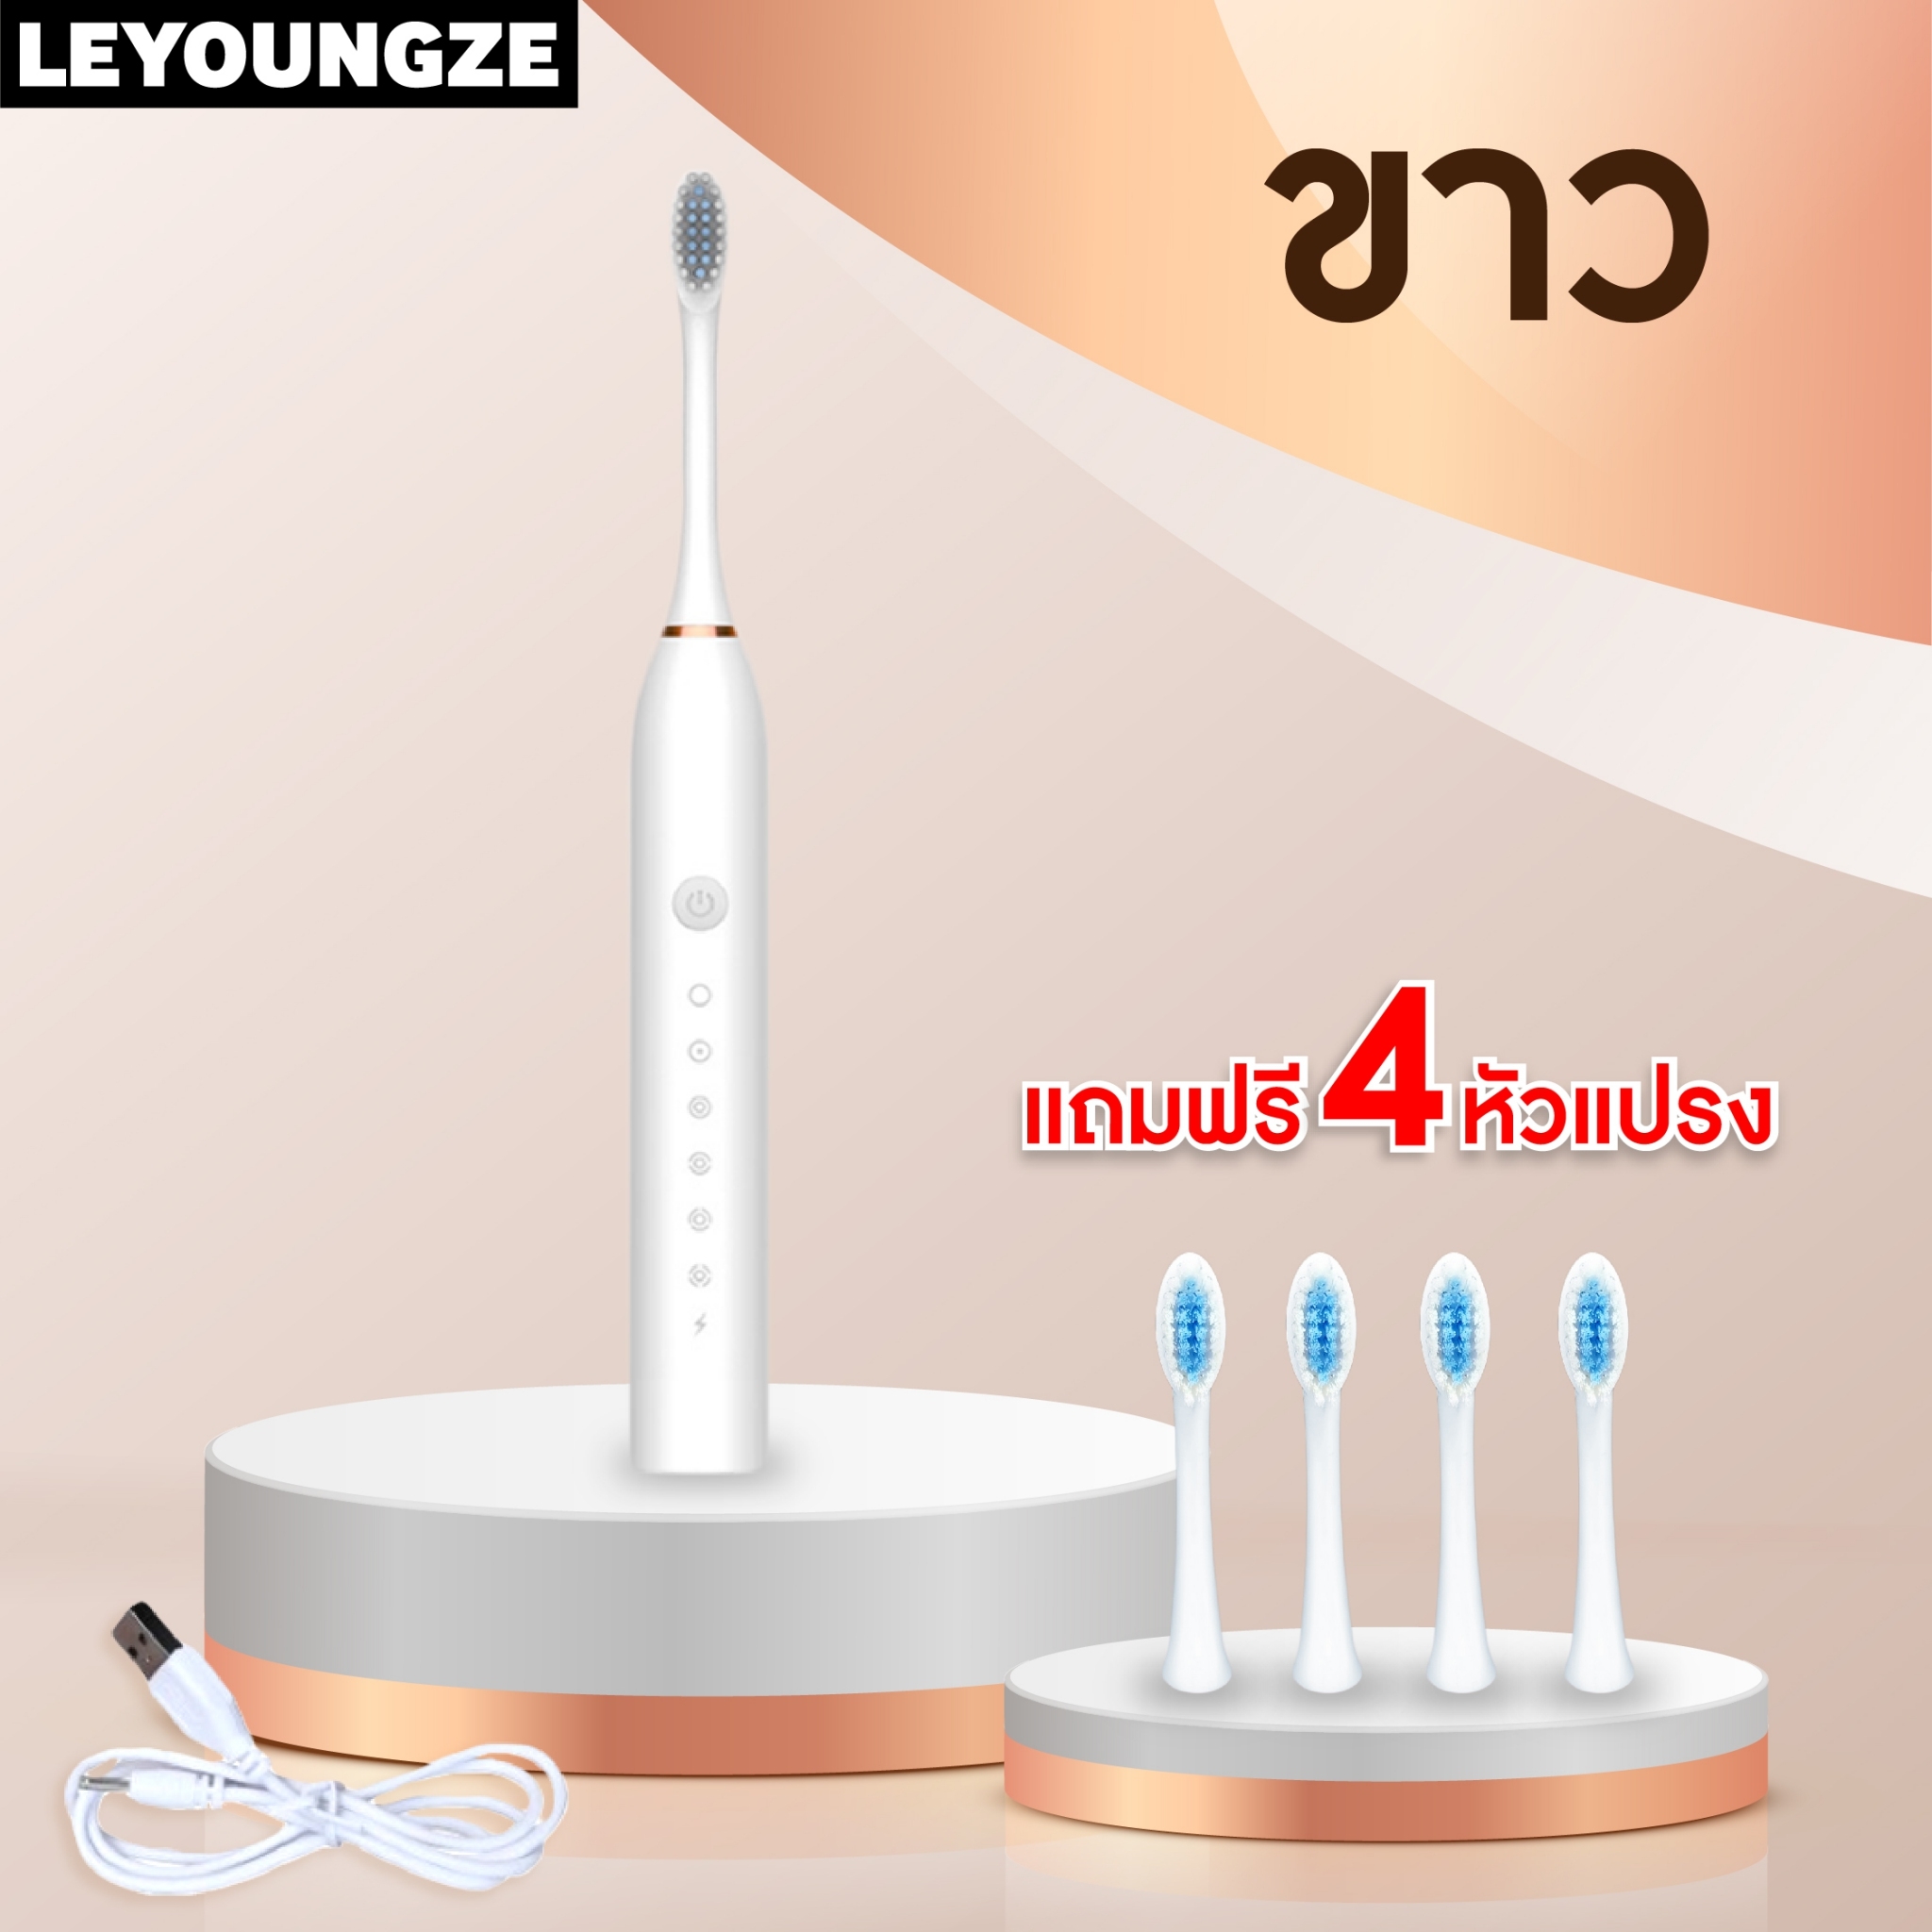 LeyoungZe แปรงสีฟันไฟฟ้า ขนแปรงนุ่ม พร้อมหัวแปรง 4 หัว หมุน 42000 รอบ/นาที กันน้ำ ปรับความแรงได้ 6 โหมด ใช้ได้ทั้ง เด็ก ผู้ใหญ่